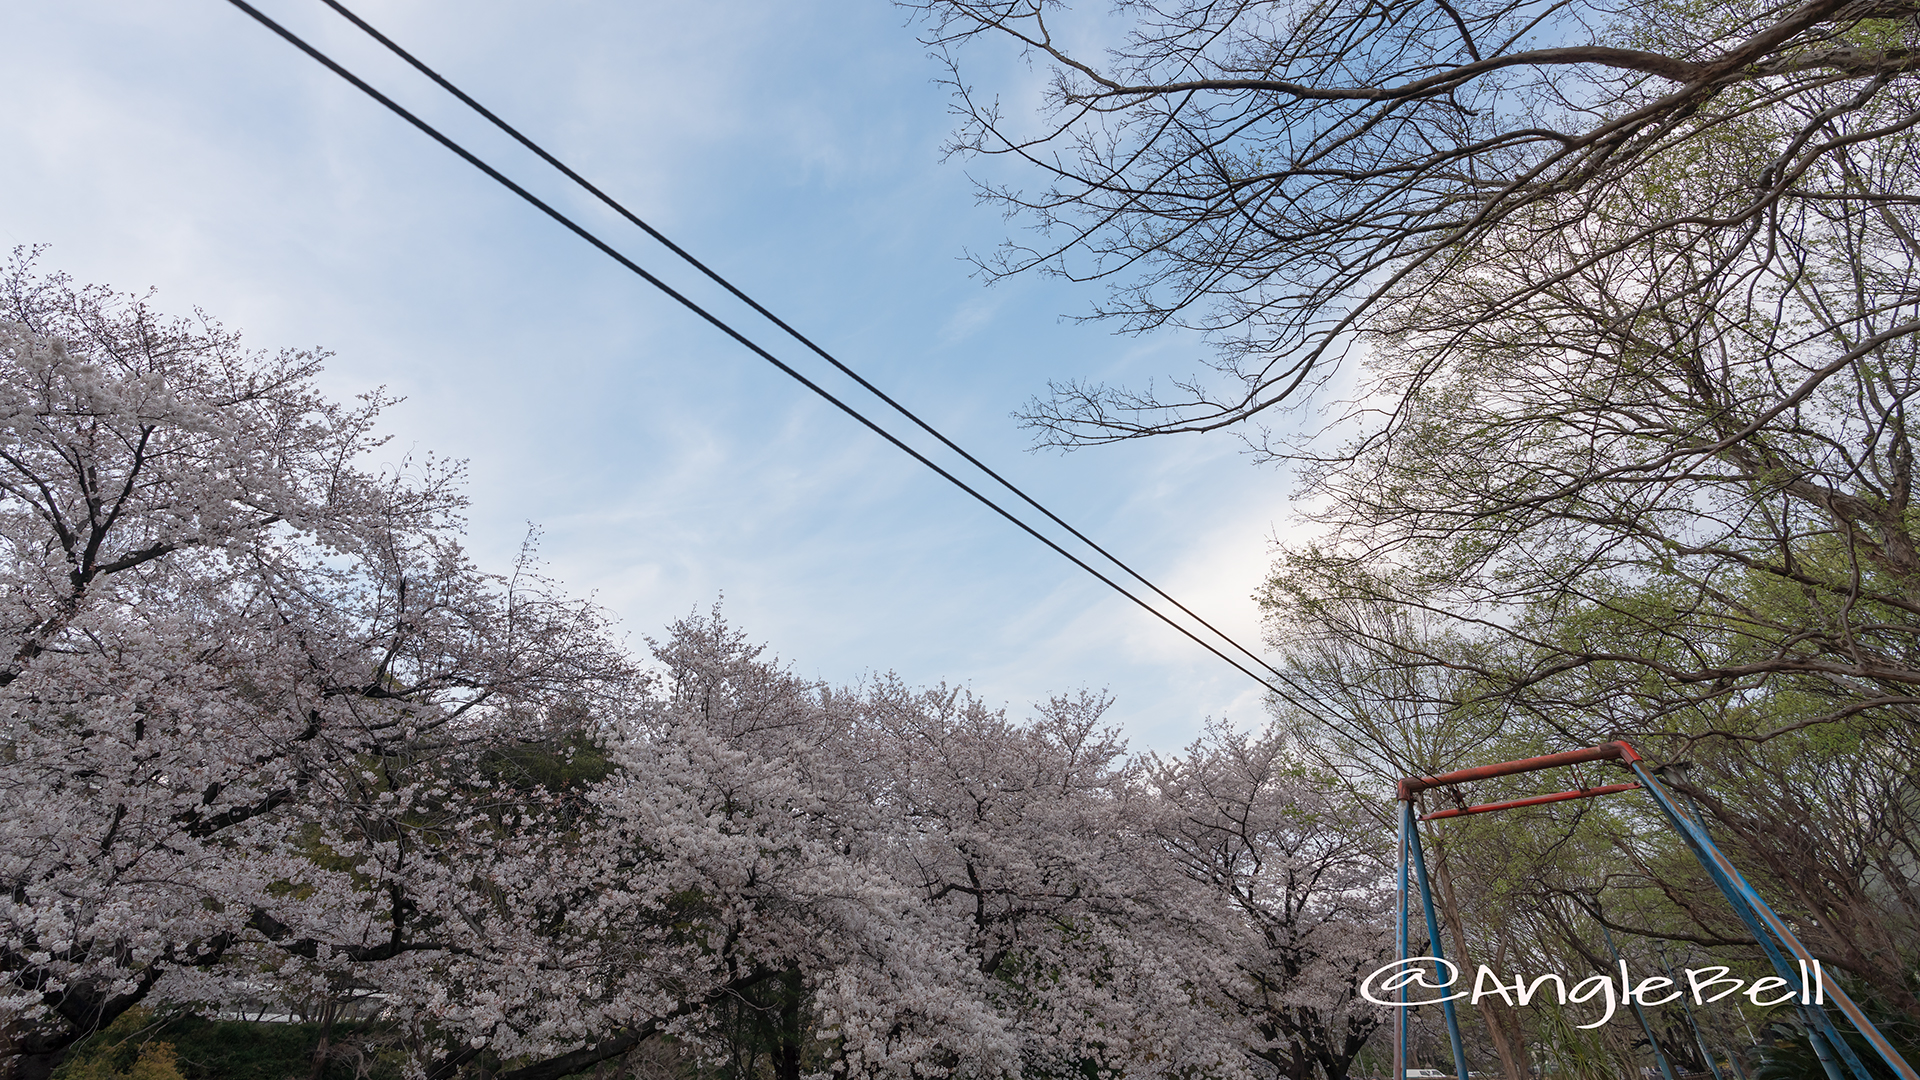 名城公園 ライオンヘルスパーク ターザンロープと桜